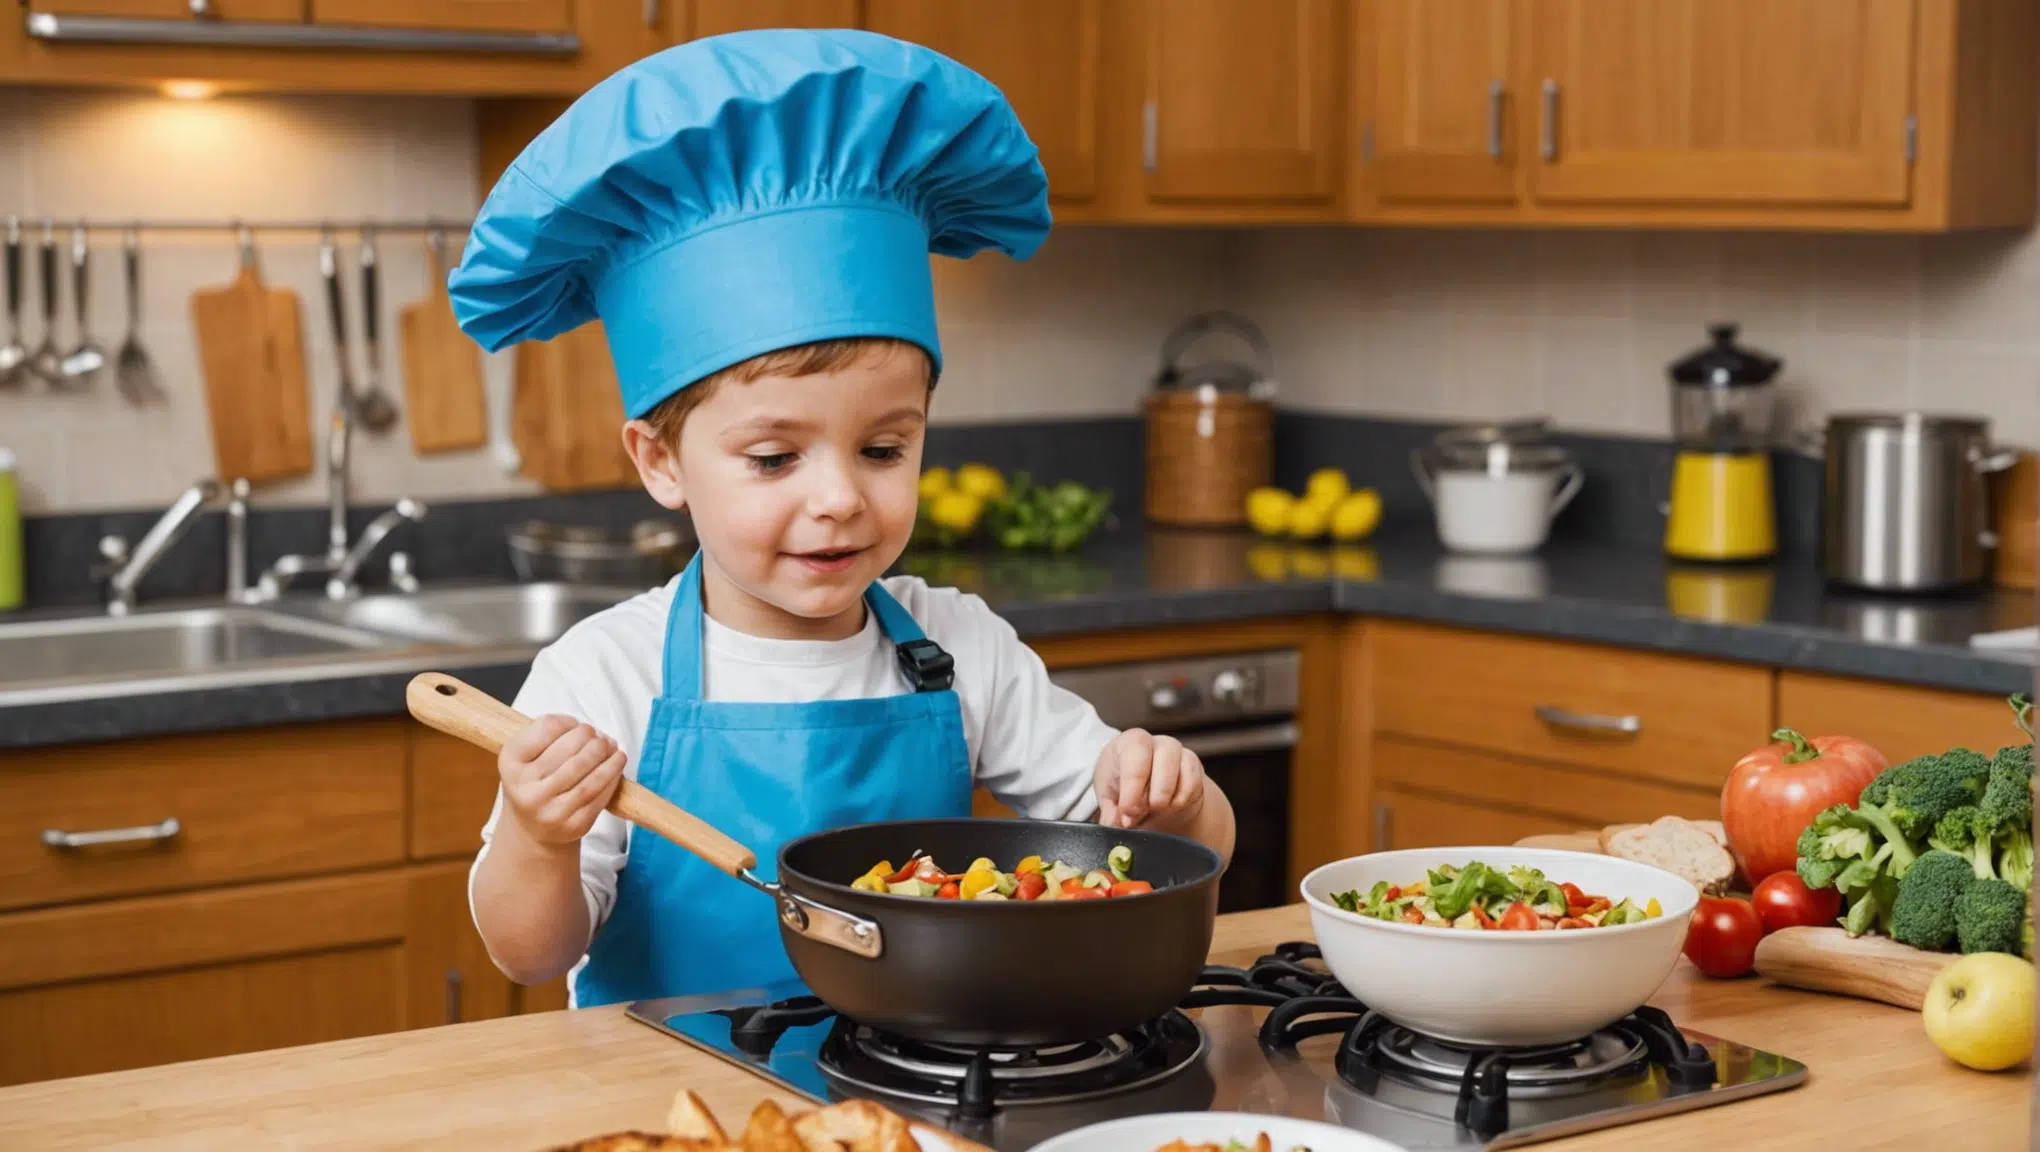 découvrez comment rendre la cuisine amusante pour les enfants avec nos conseils et astuces. des idées ludiques pour des moments gourmands en famille.